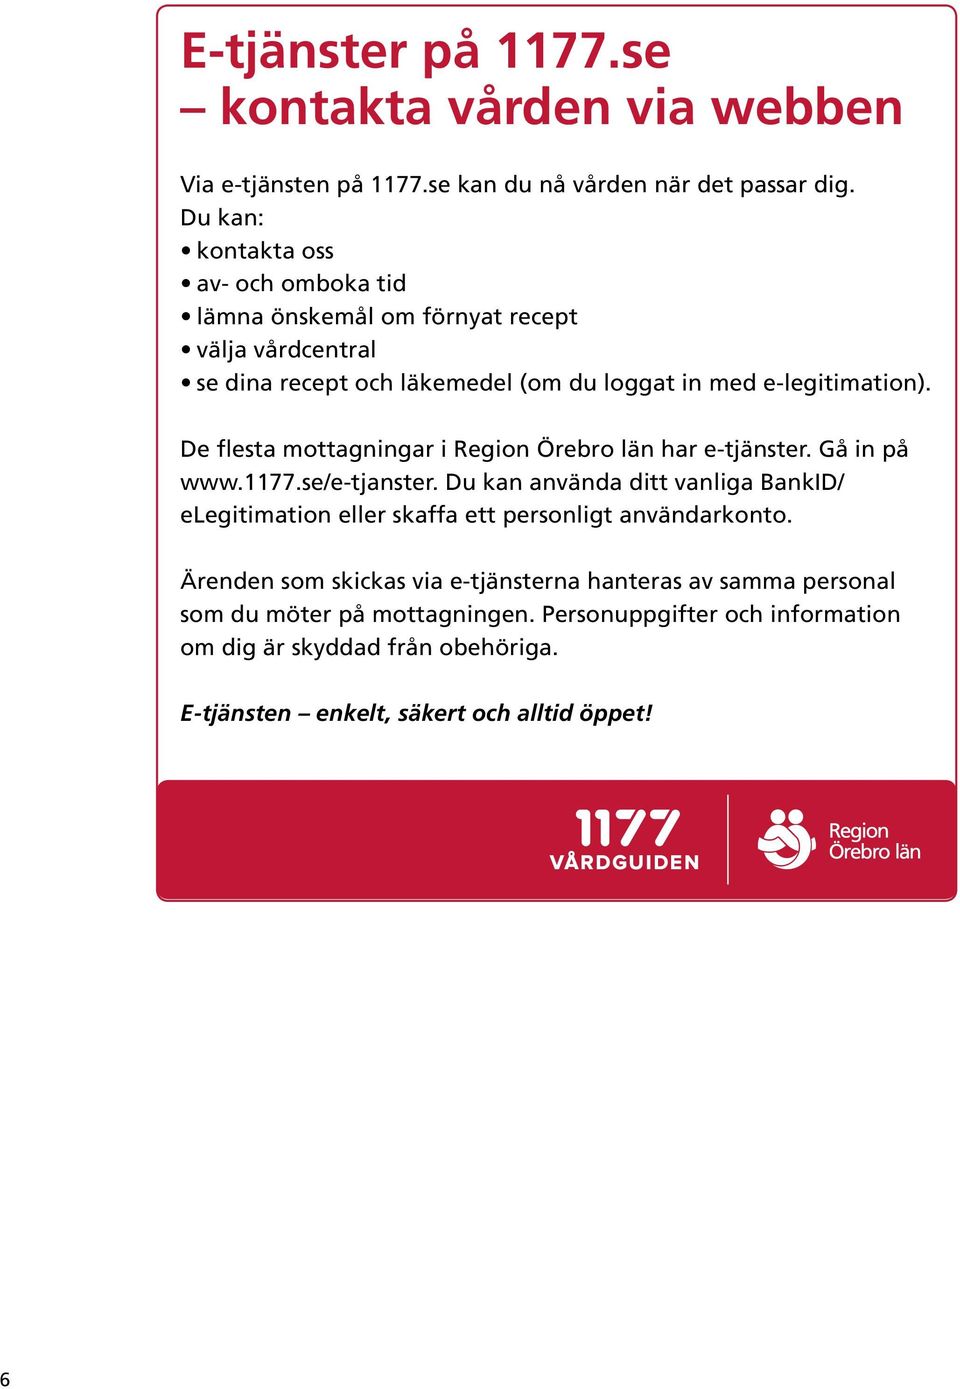 De flesta mottagningar i Region Örebro län har e-tjänster. Gå in på www.1177.se/e-tjanster.